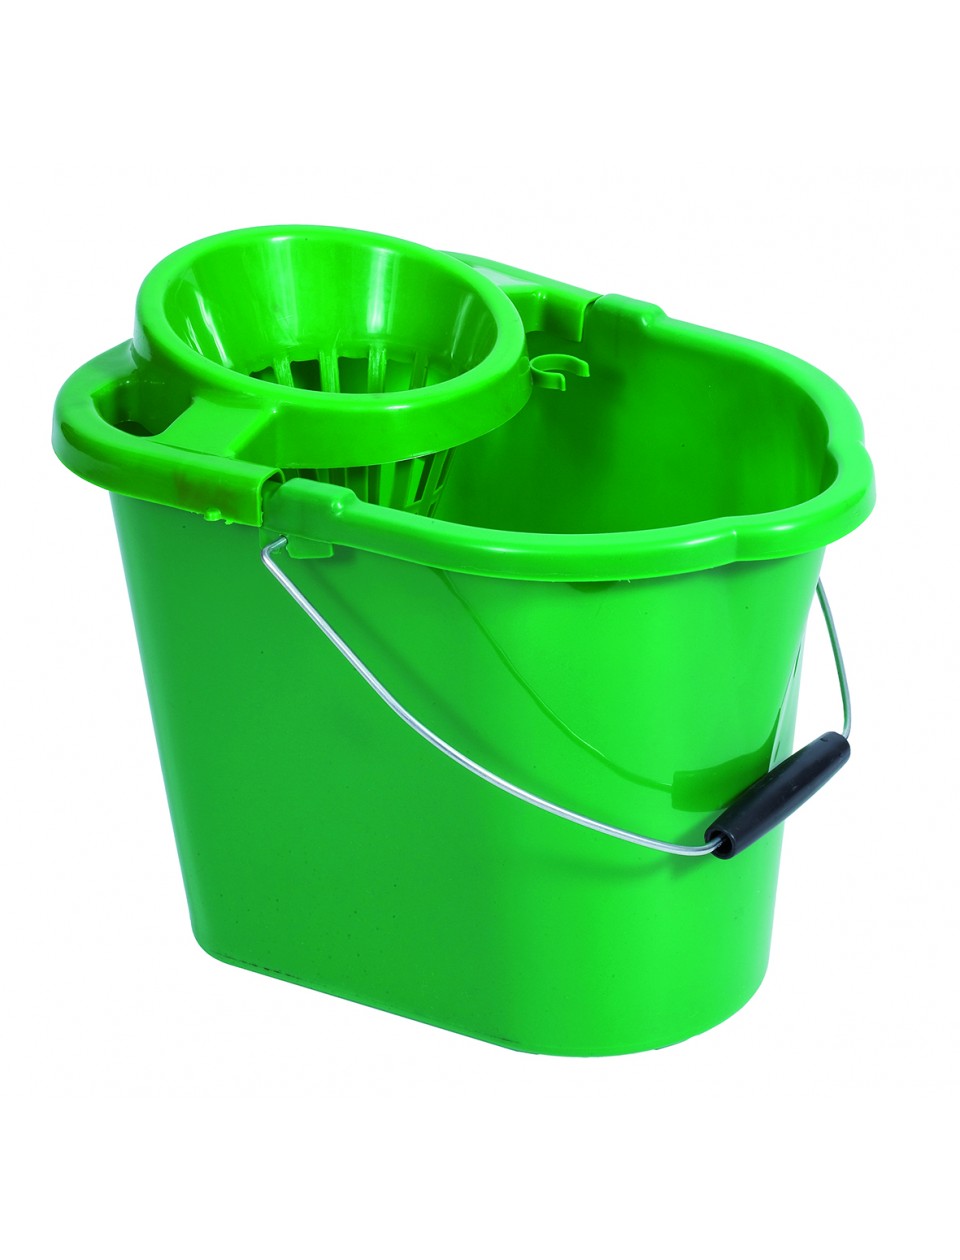 plastic mop bucket